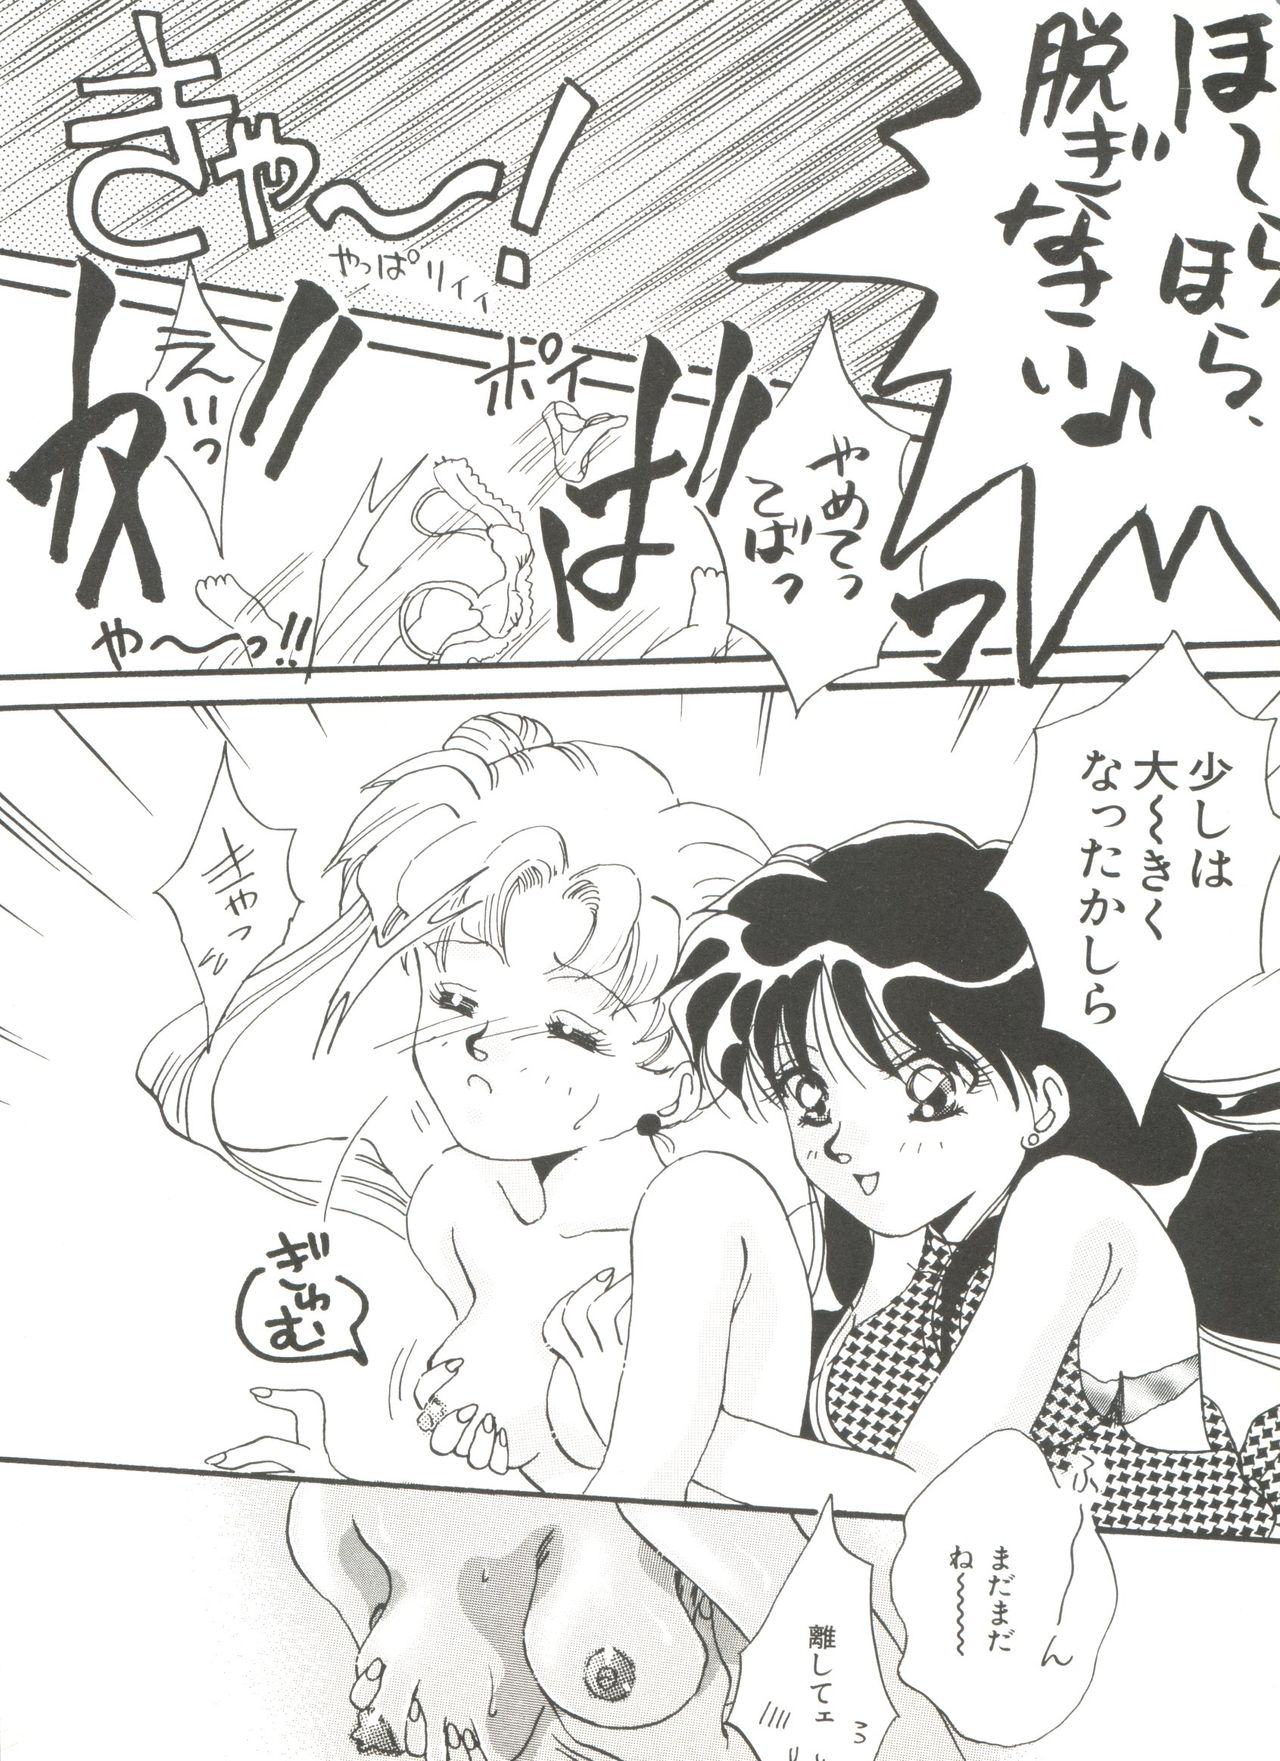 [Anthology] Bishoujo Doujinshi Anthology 18 - Moon Paradise 11 Tsuki no Rakuen (Bishoujo Senshi Sailor Moon) page 8 full